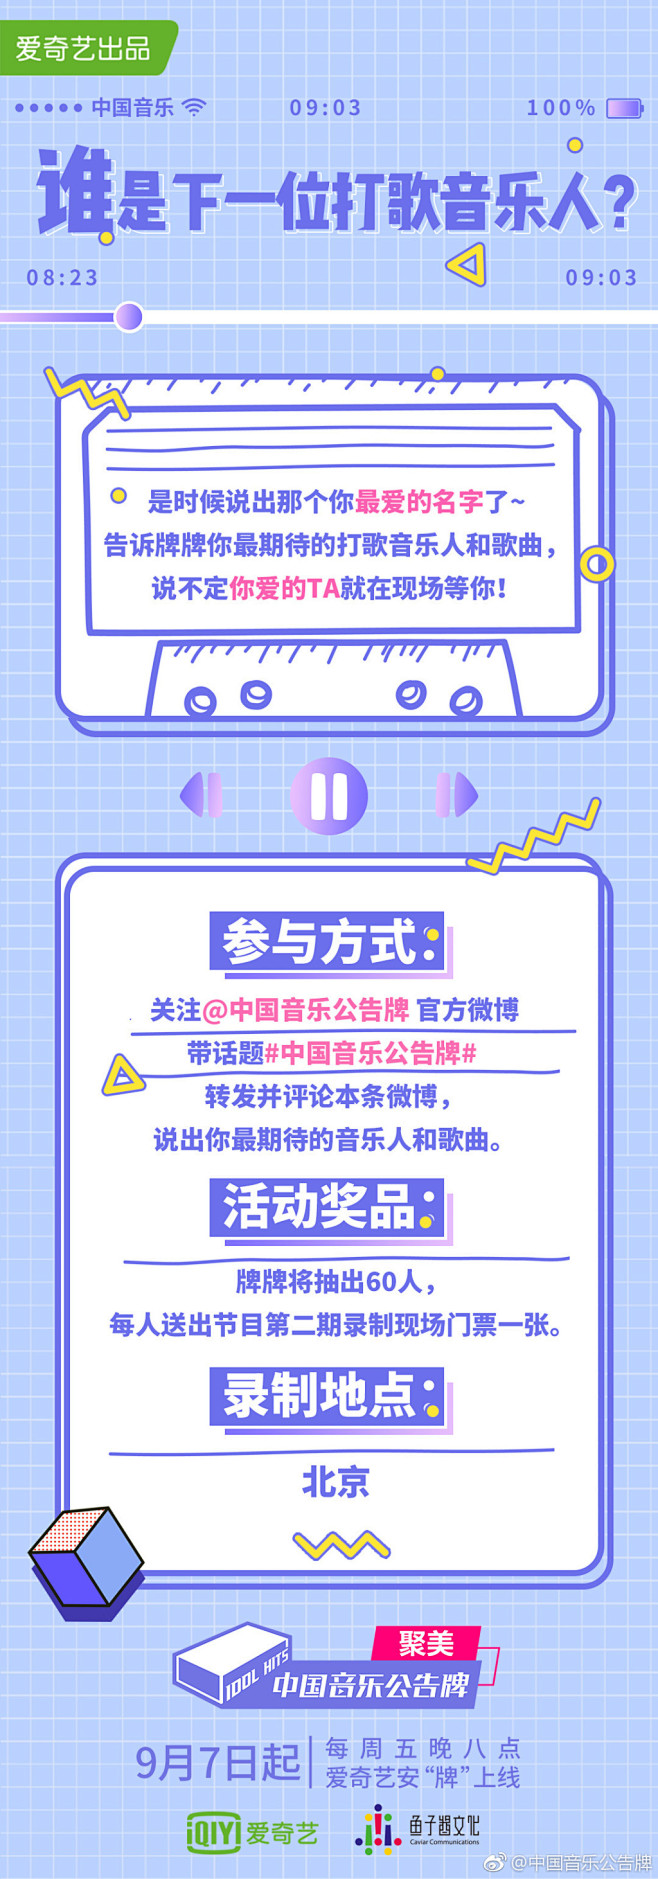 中国音乐公告牌的微博_微博